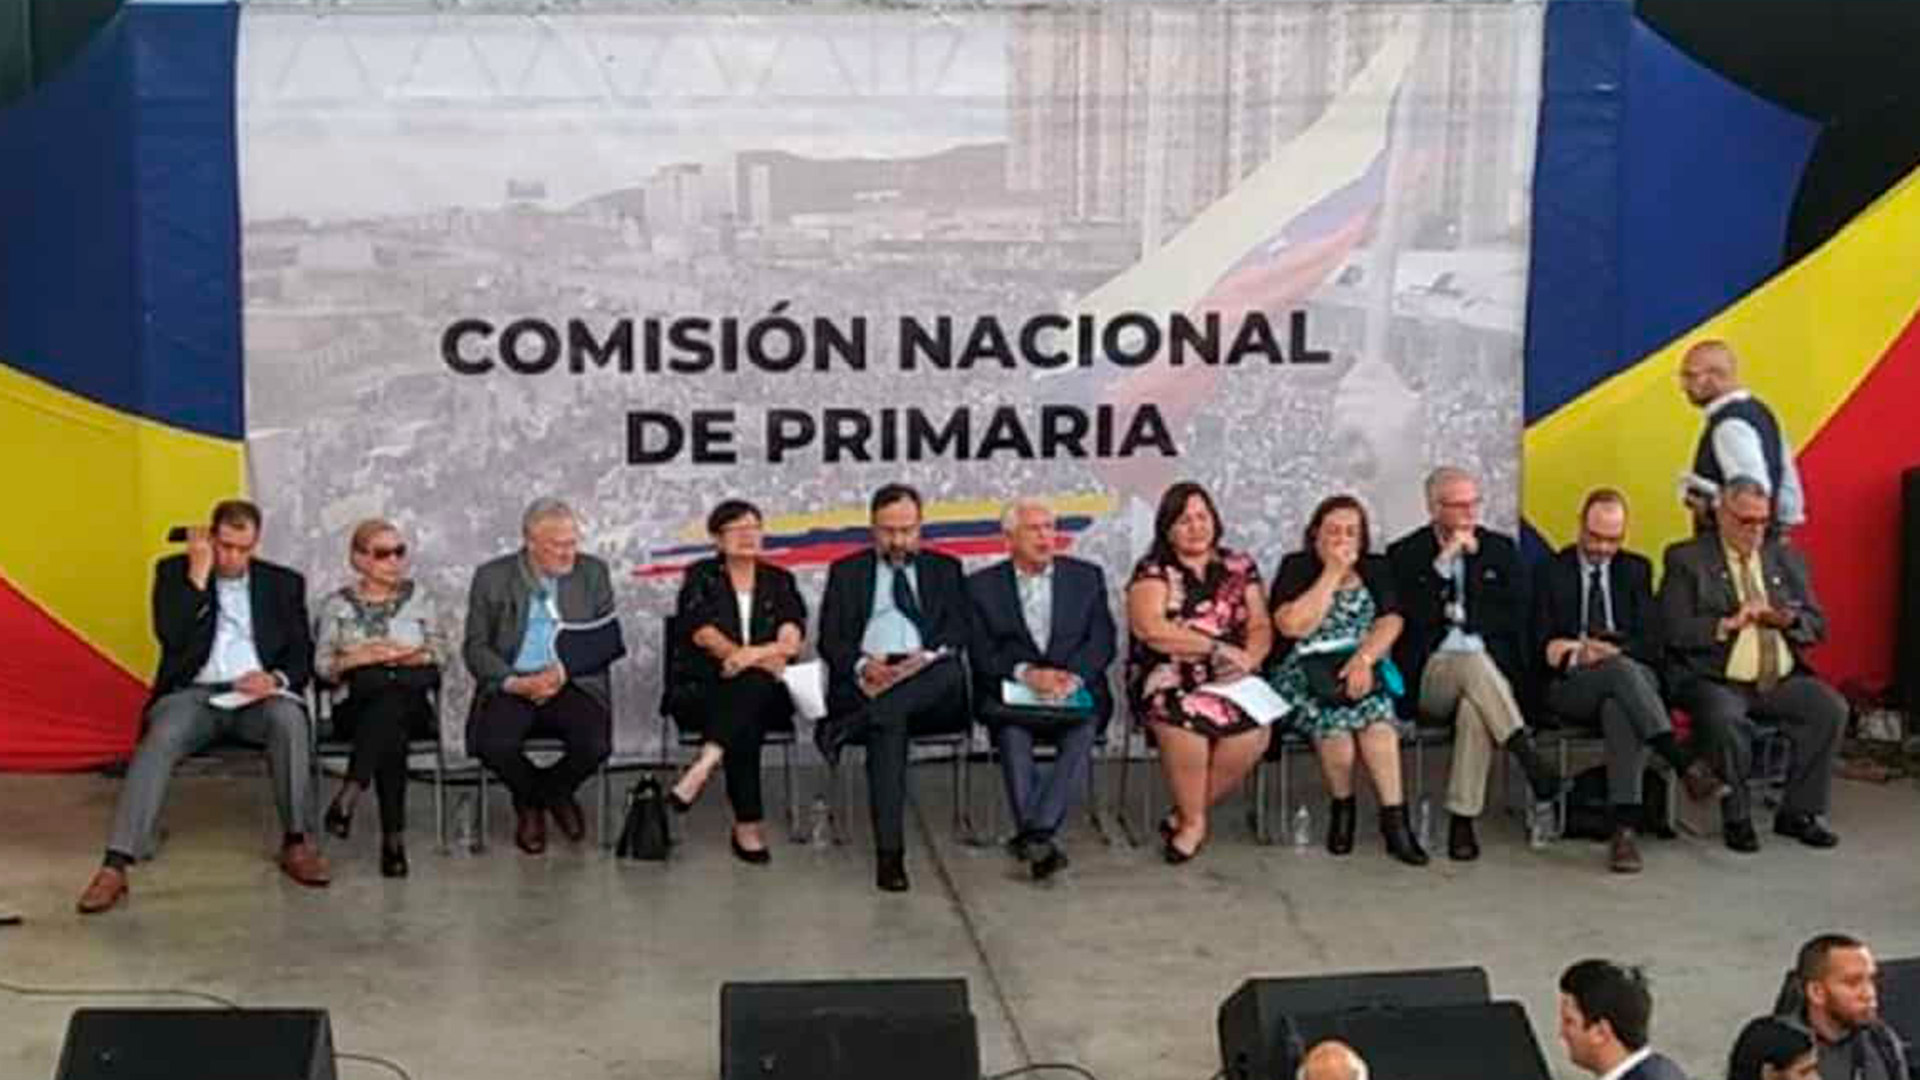 Gremios y sindicatos venezolanos pidieron a la oposición que las elecciones primarias sean inclusivas